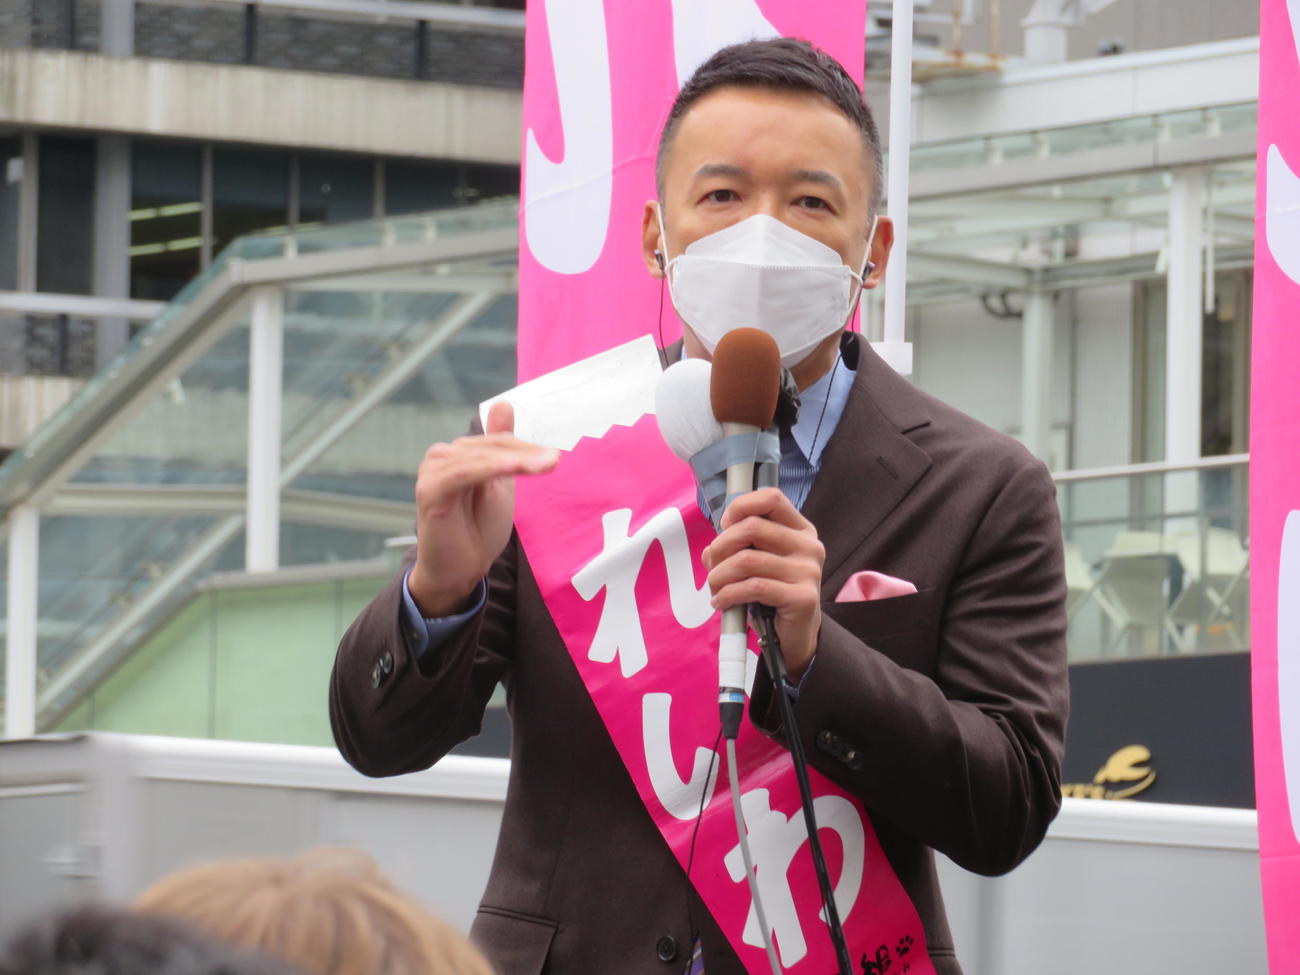 れいわ新選組の山本太郎代表は東京・新宿駅南口で第一声を発し、マスク姿で身ぶりを交えてマイクを握った（撮影・寺沢卓）